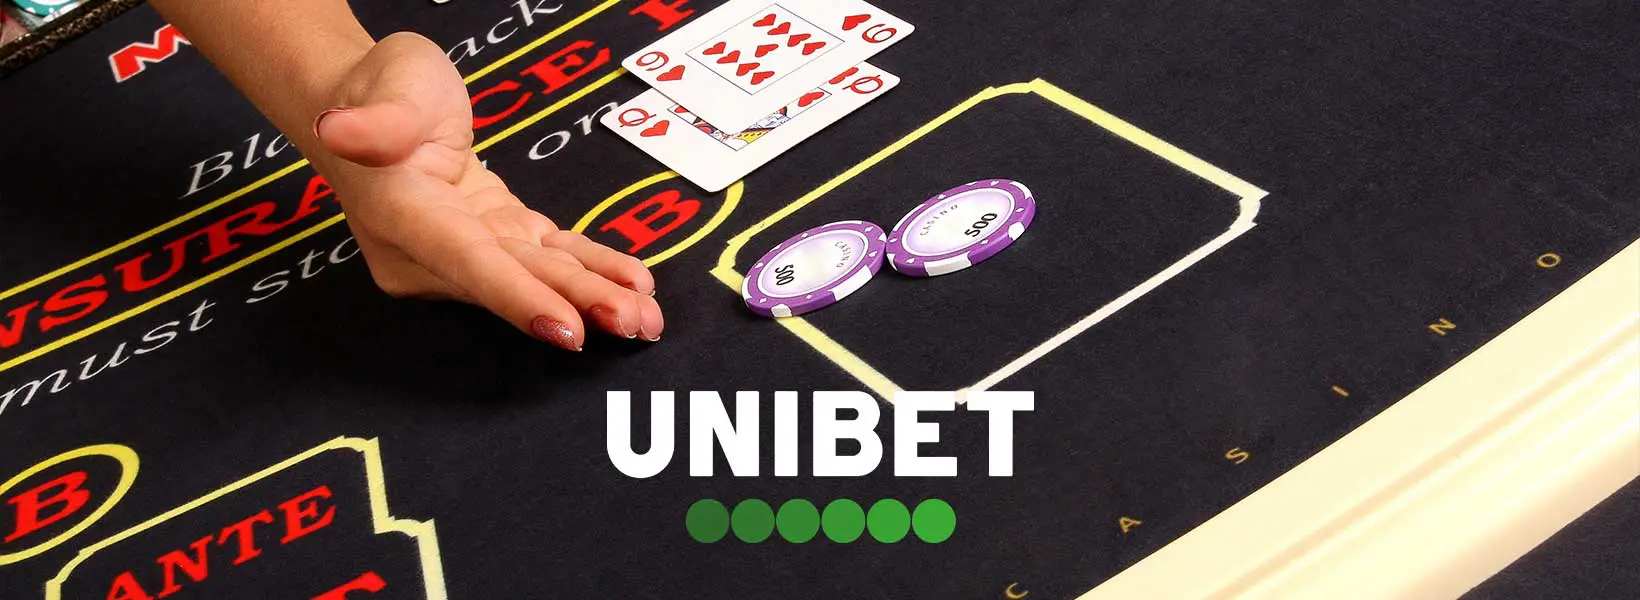 banner unibet blackjack